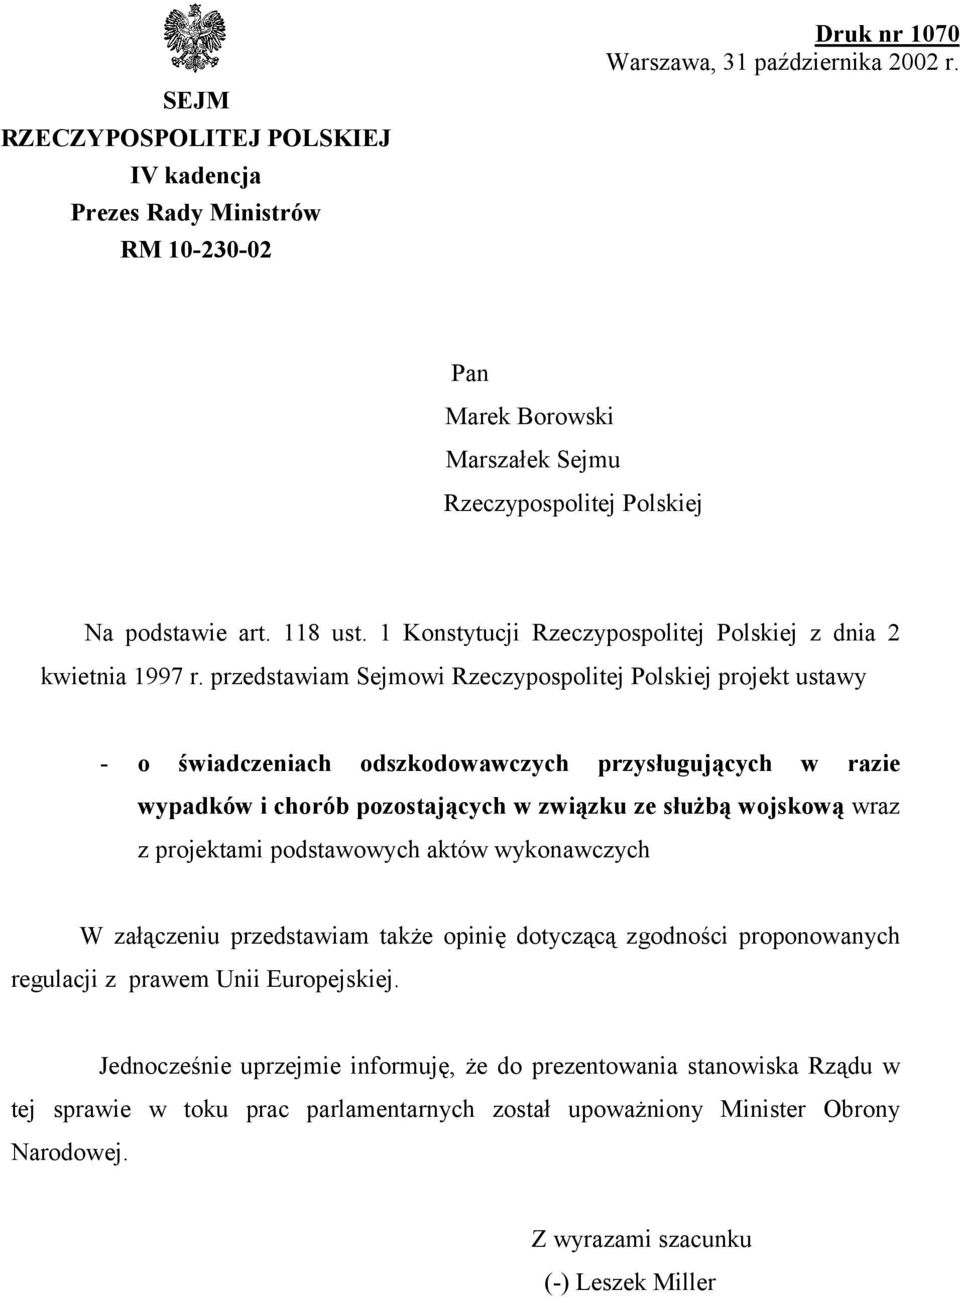 przedstawiam Sejmowi Rzeczypospolitej Polskiej projekt ustawy - o świadczeniach odszkodowawczych przysługujących w razie wypadków i chorób pozostających w związku ze służbą wojskową wraz z projektami